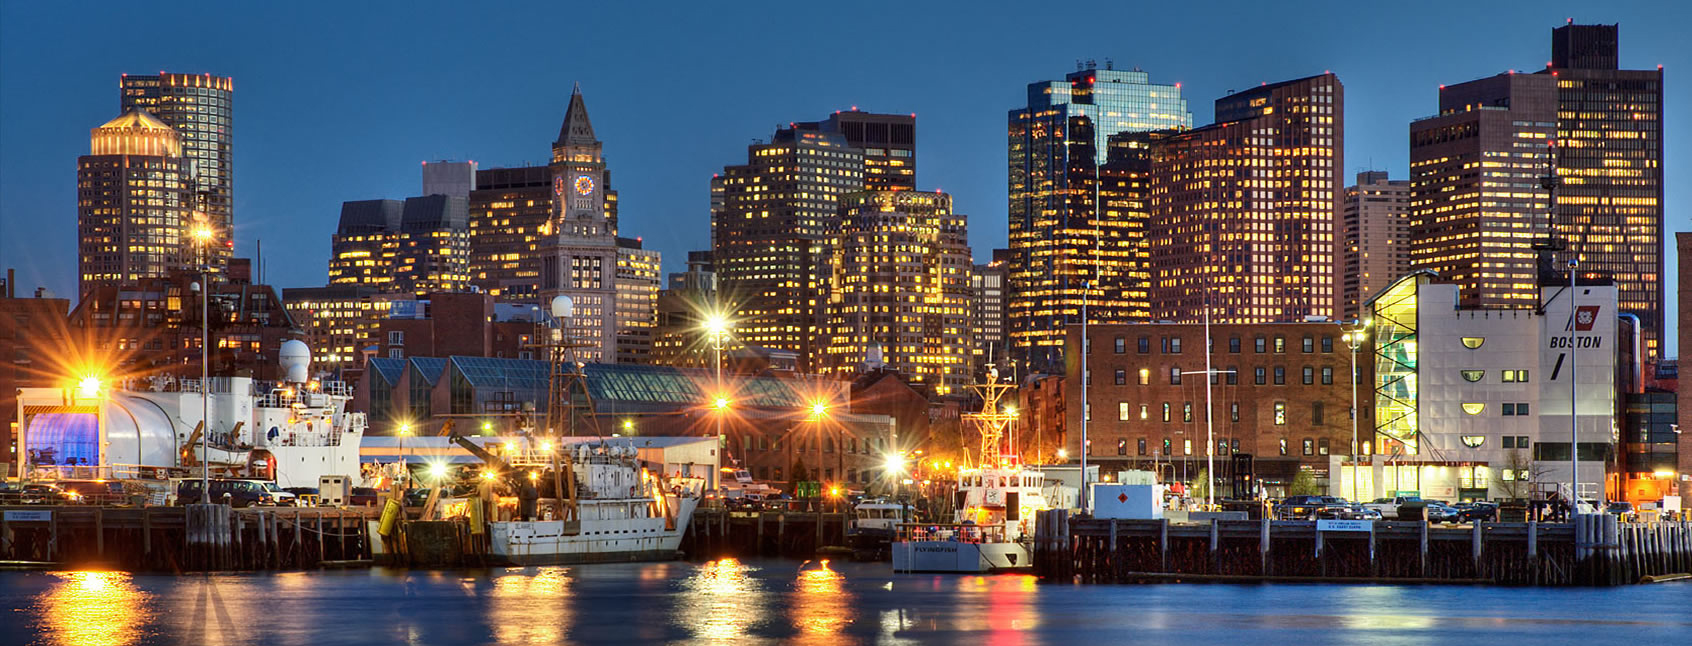 Boston Best Image Of City HD Wallpaper In